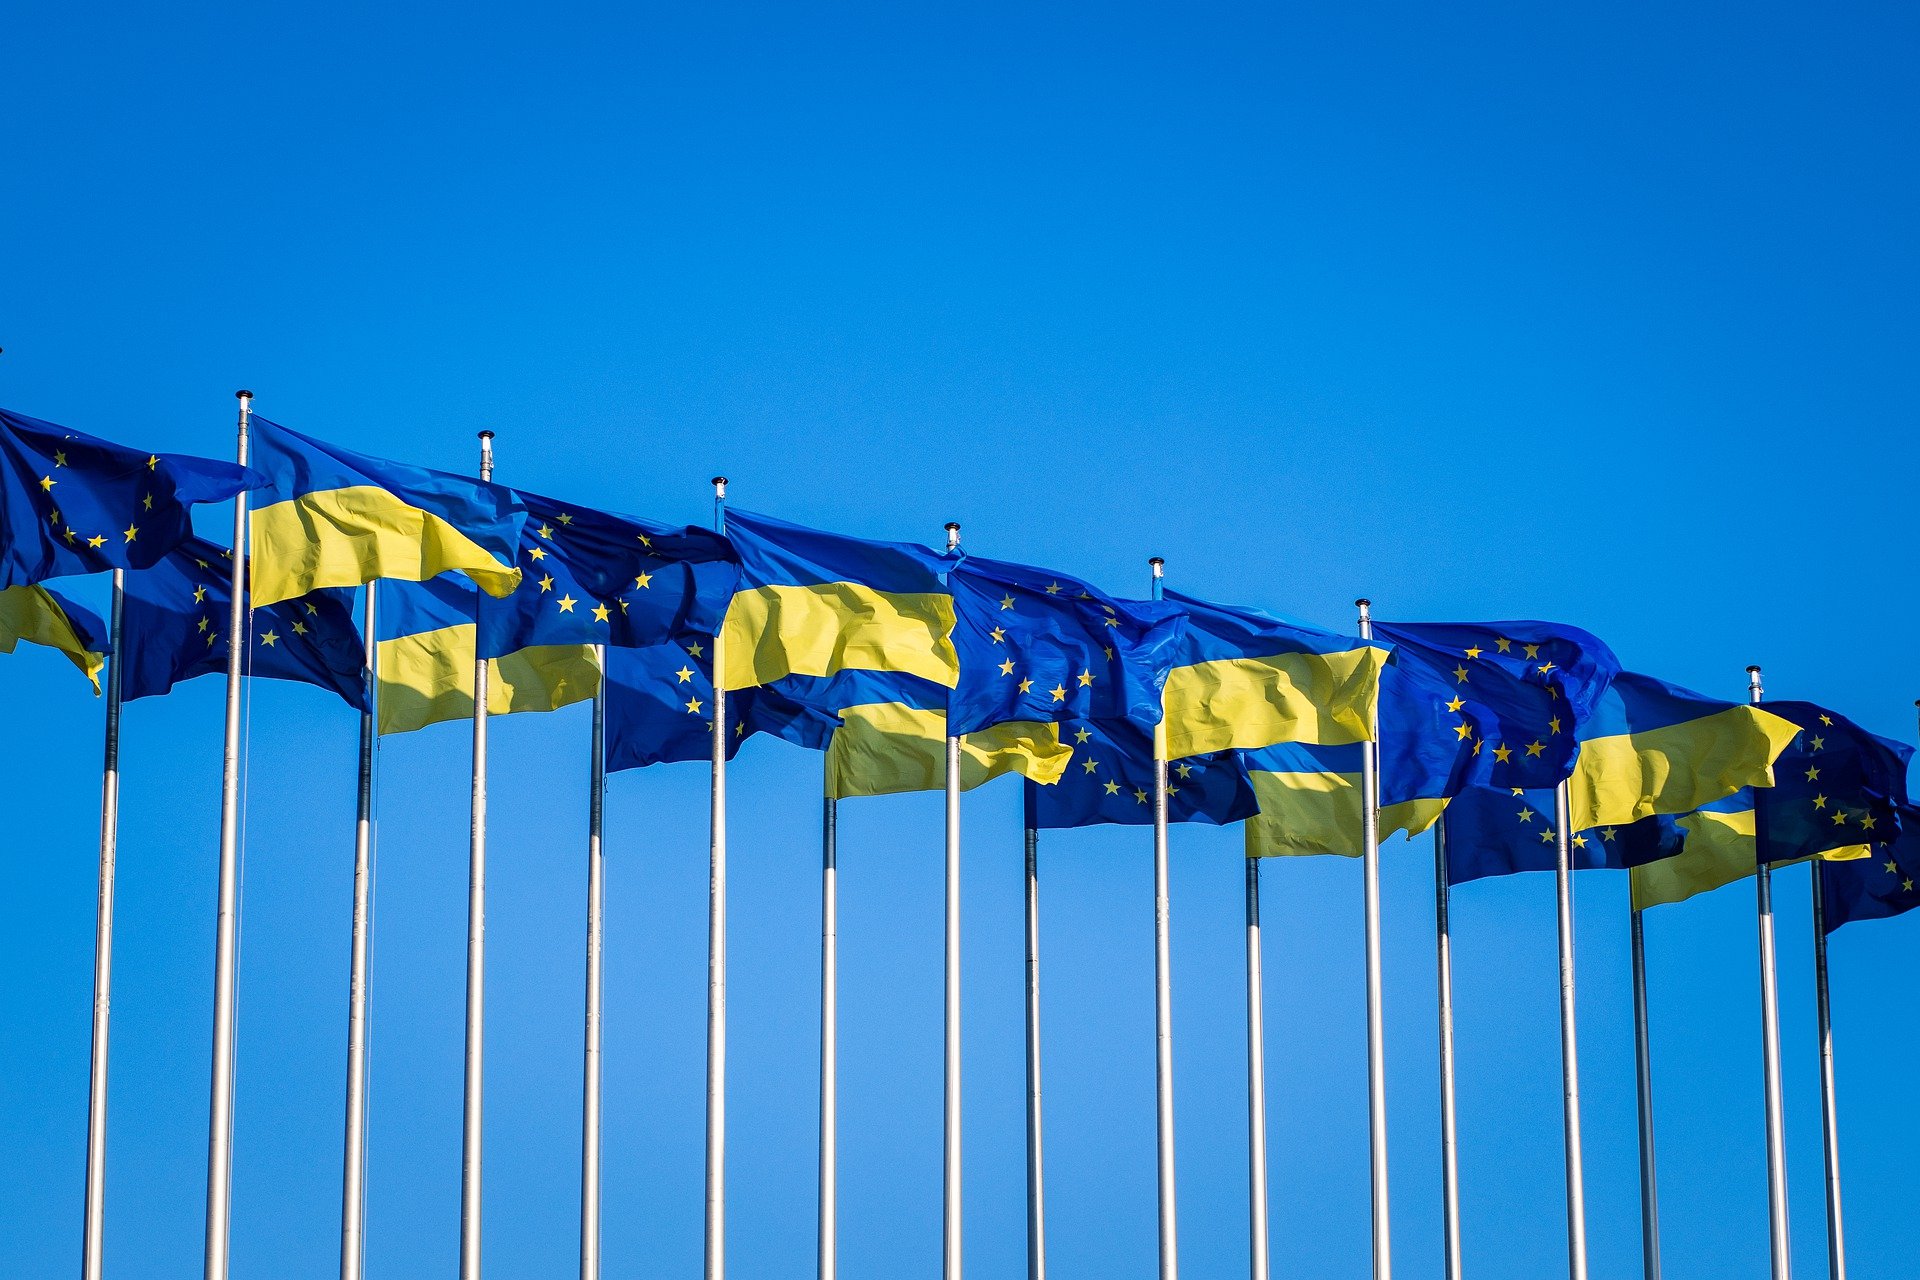 Ungarische Regierung unterstützt EU-Kandidatur der Ukraine, Moldawiens, Georgiens, Bosniens und Herzegowinas